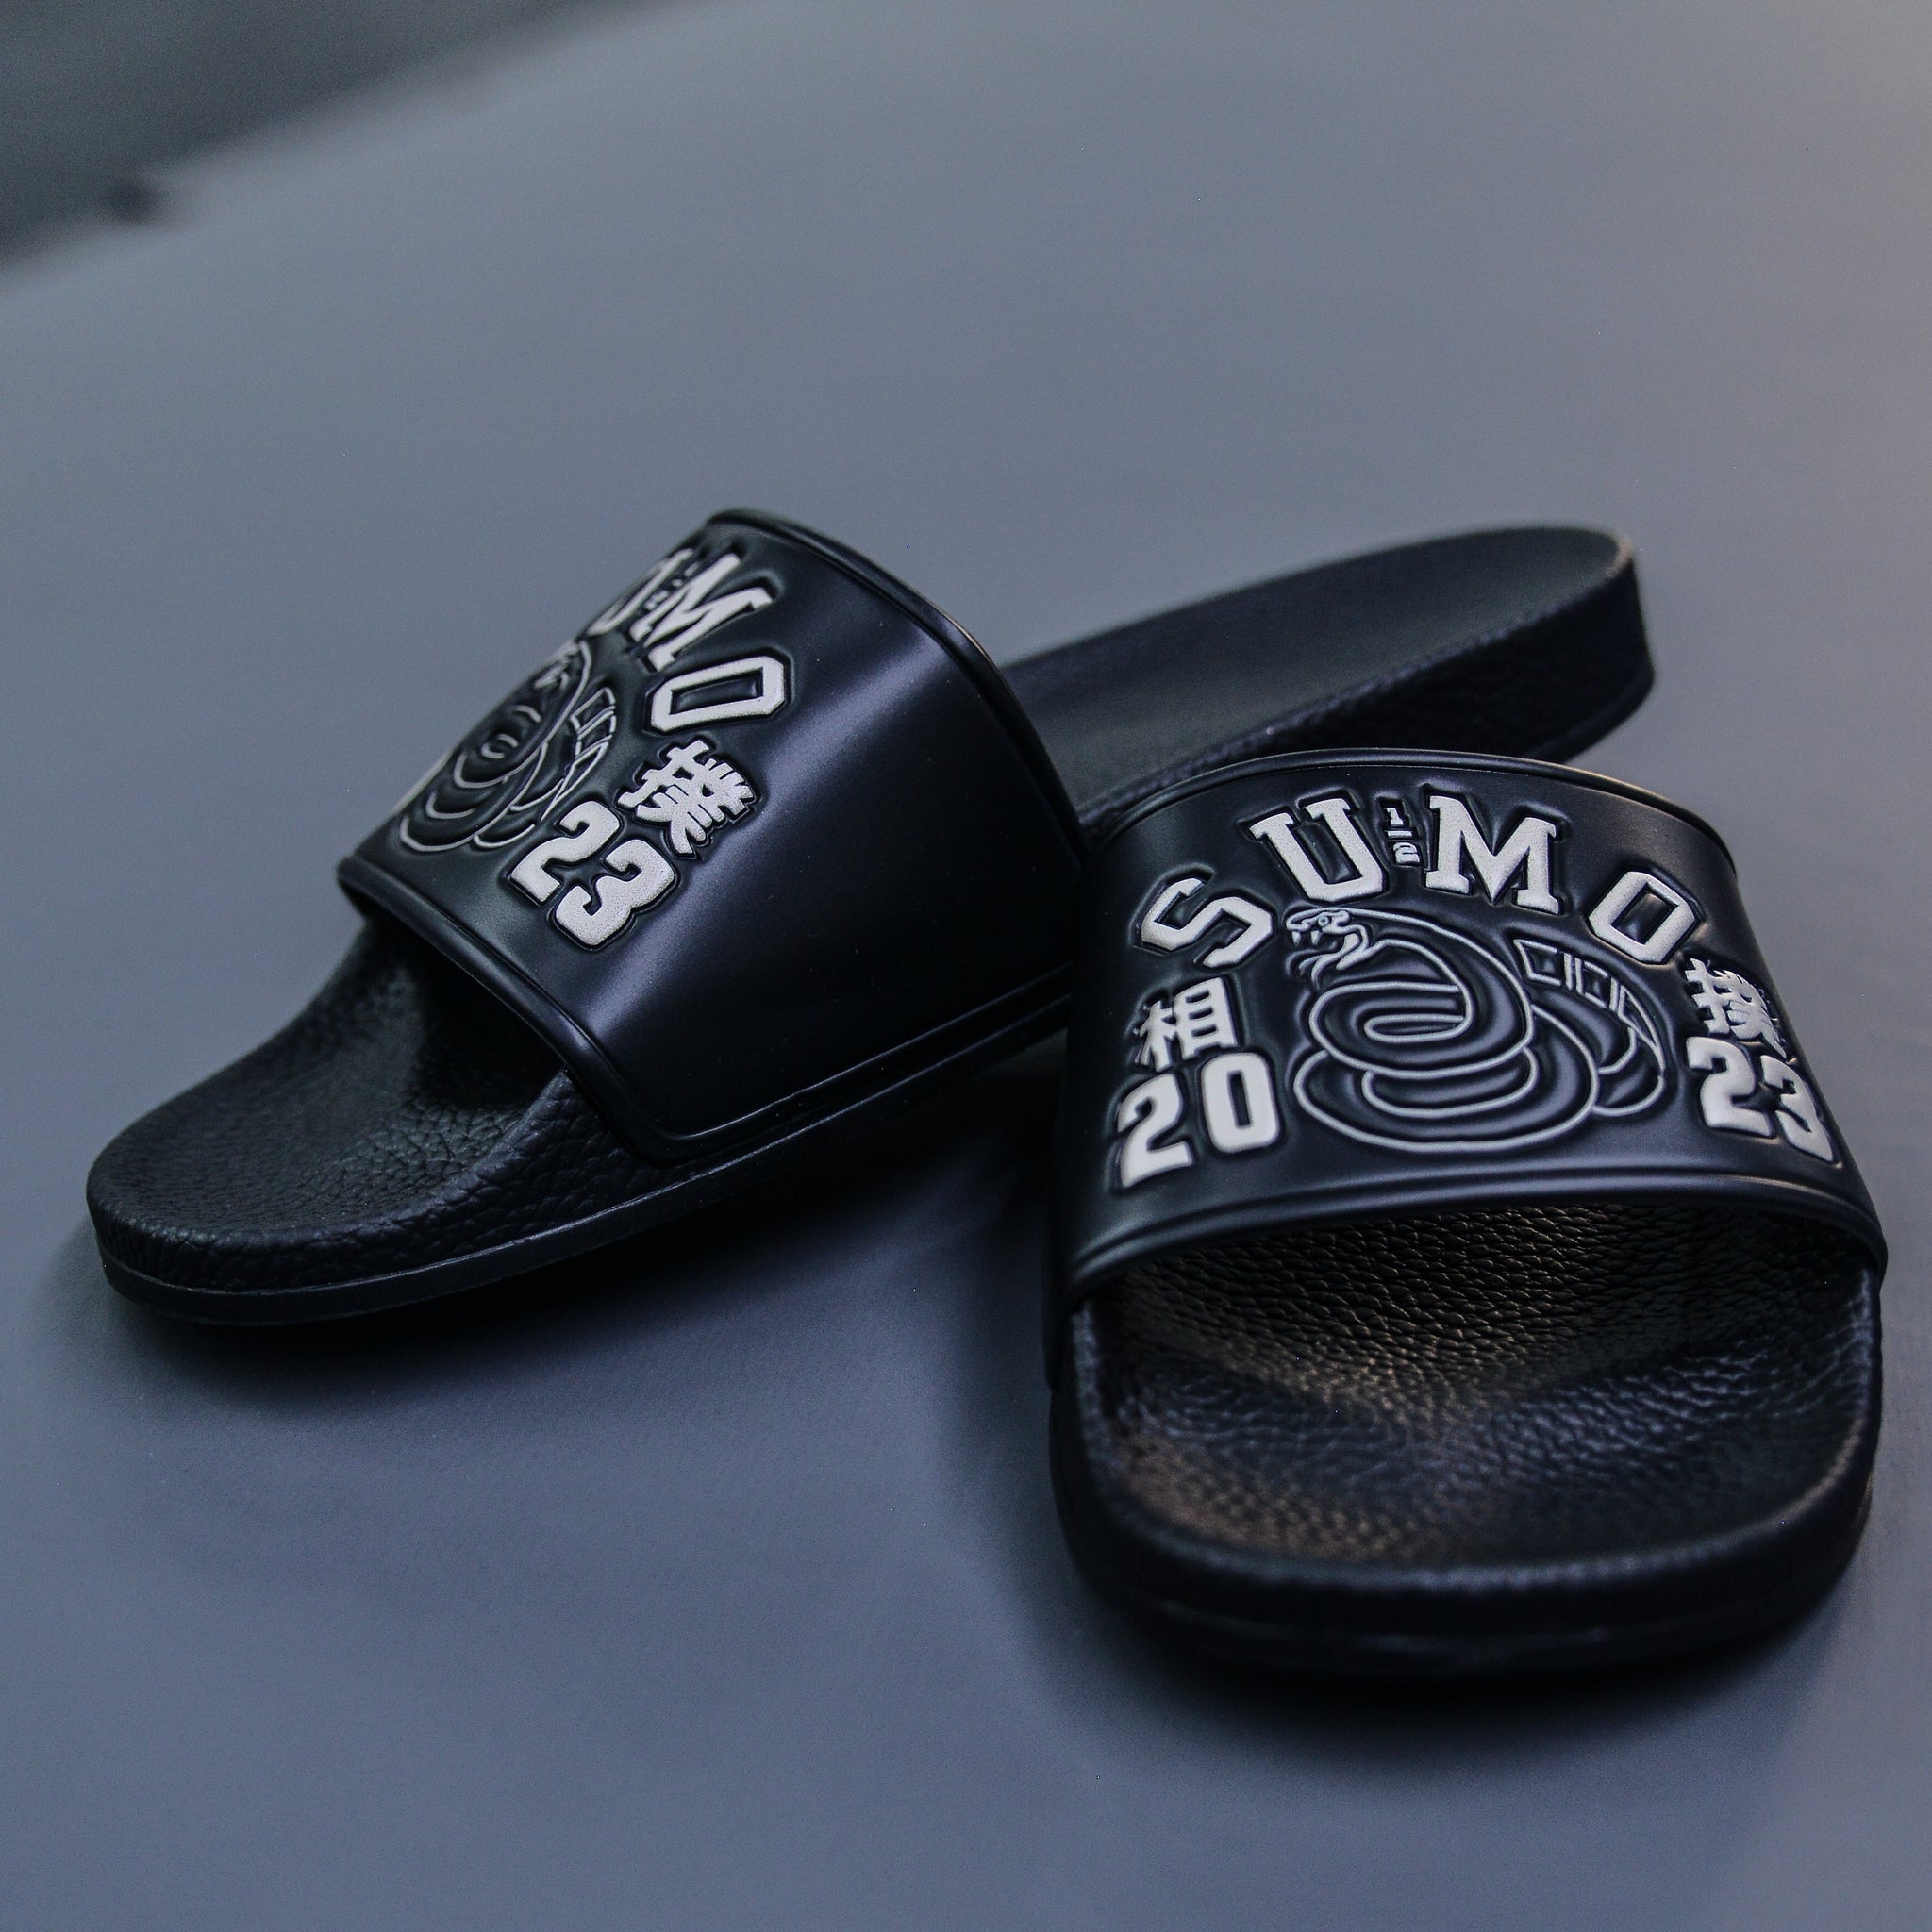 Black Mamba Premium Sliders